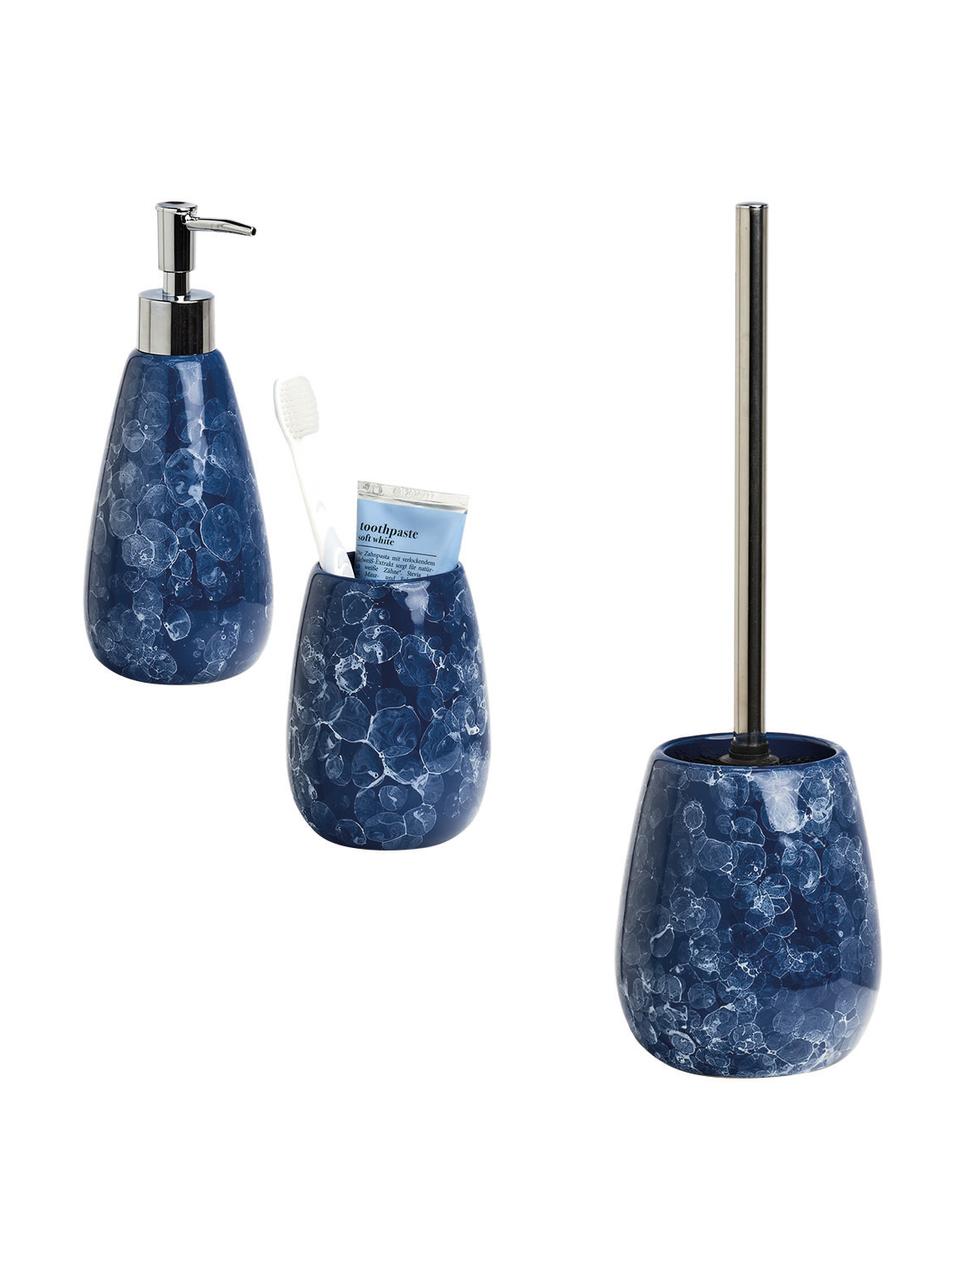 Porta spazzolino in ceramica Blue Marble, Ceramica, Blu, Ø 9 x Alt. 12 cm